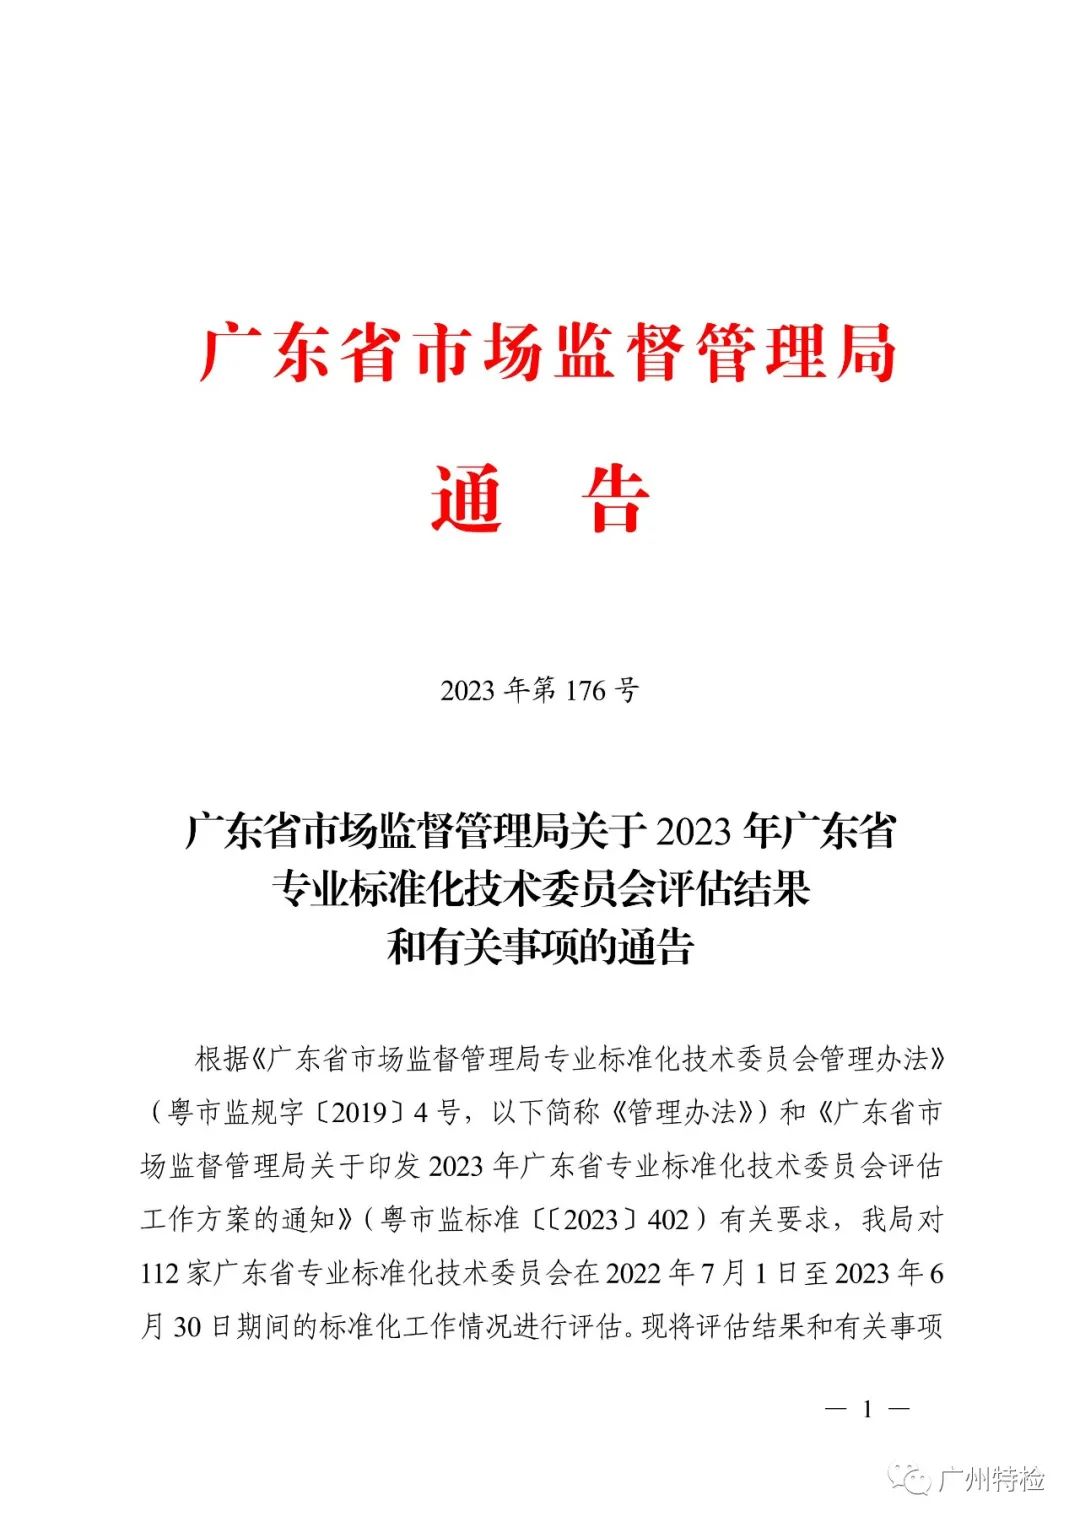 广东省石墨烯标准化技术委员会获得2023年广东省专业标准化技术委员会评估优秀